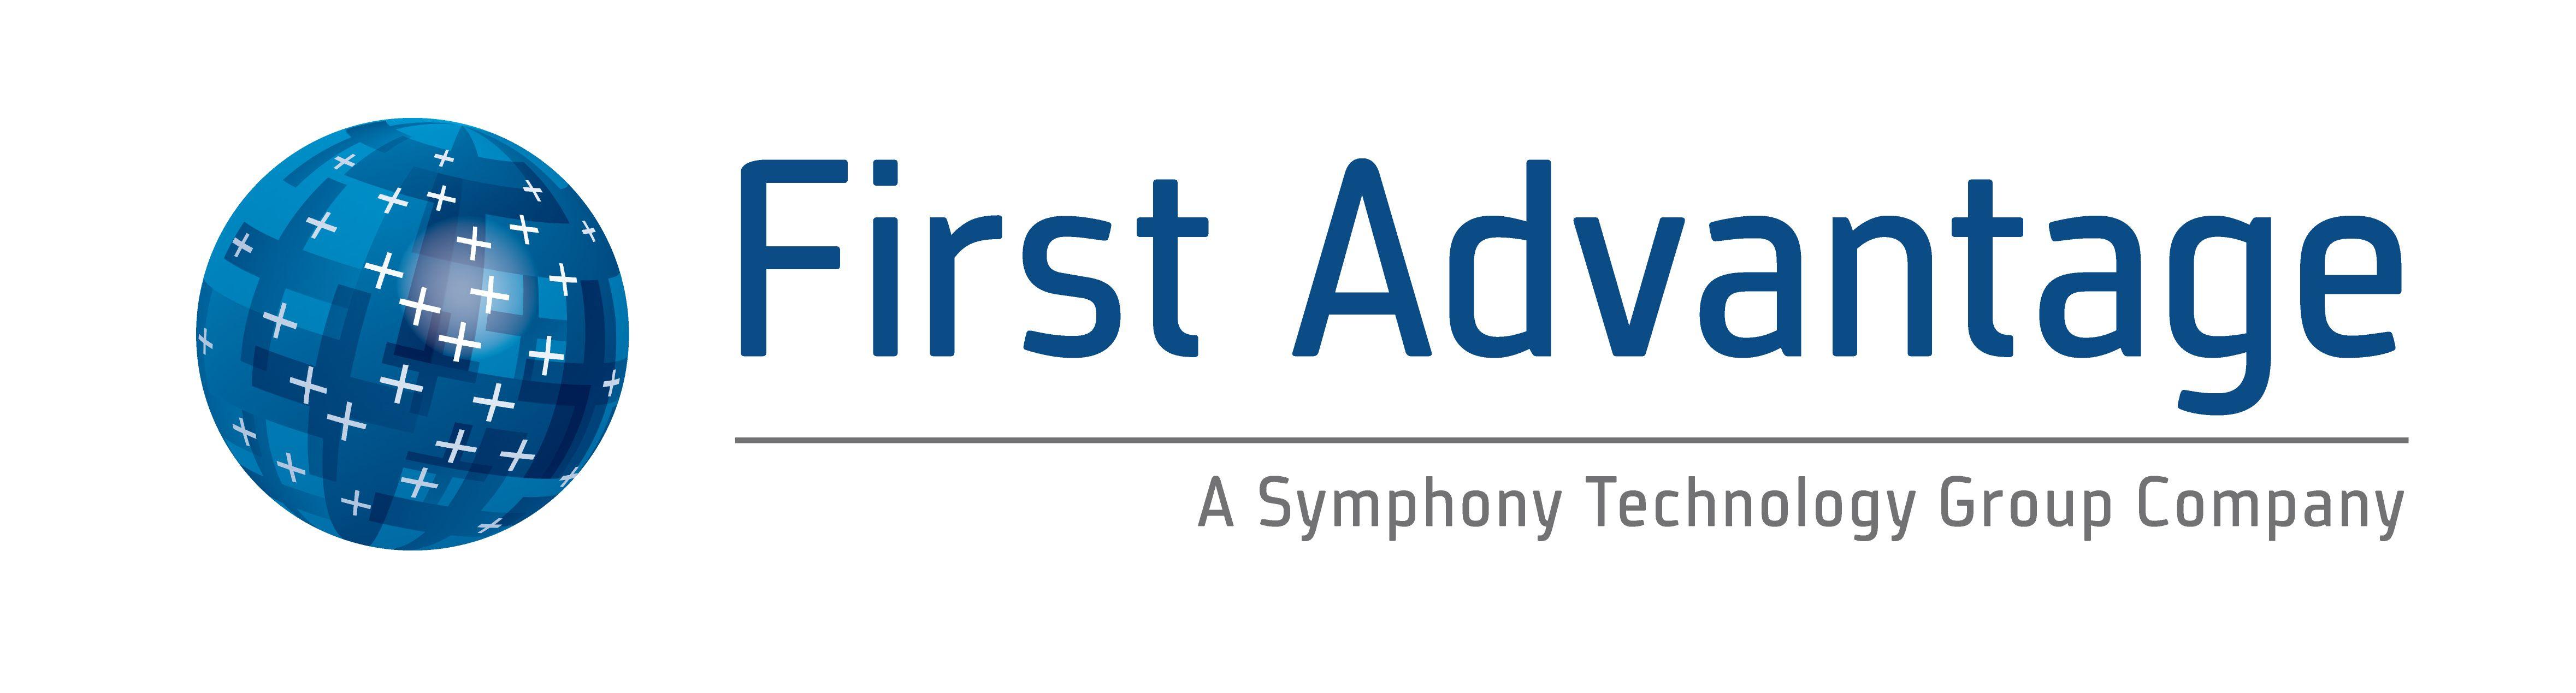 Advantage Logo - First Advantage Logo